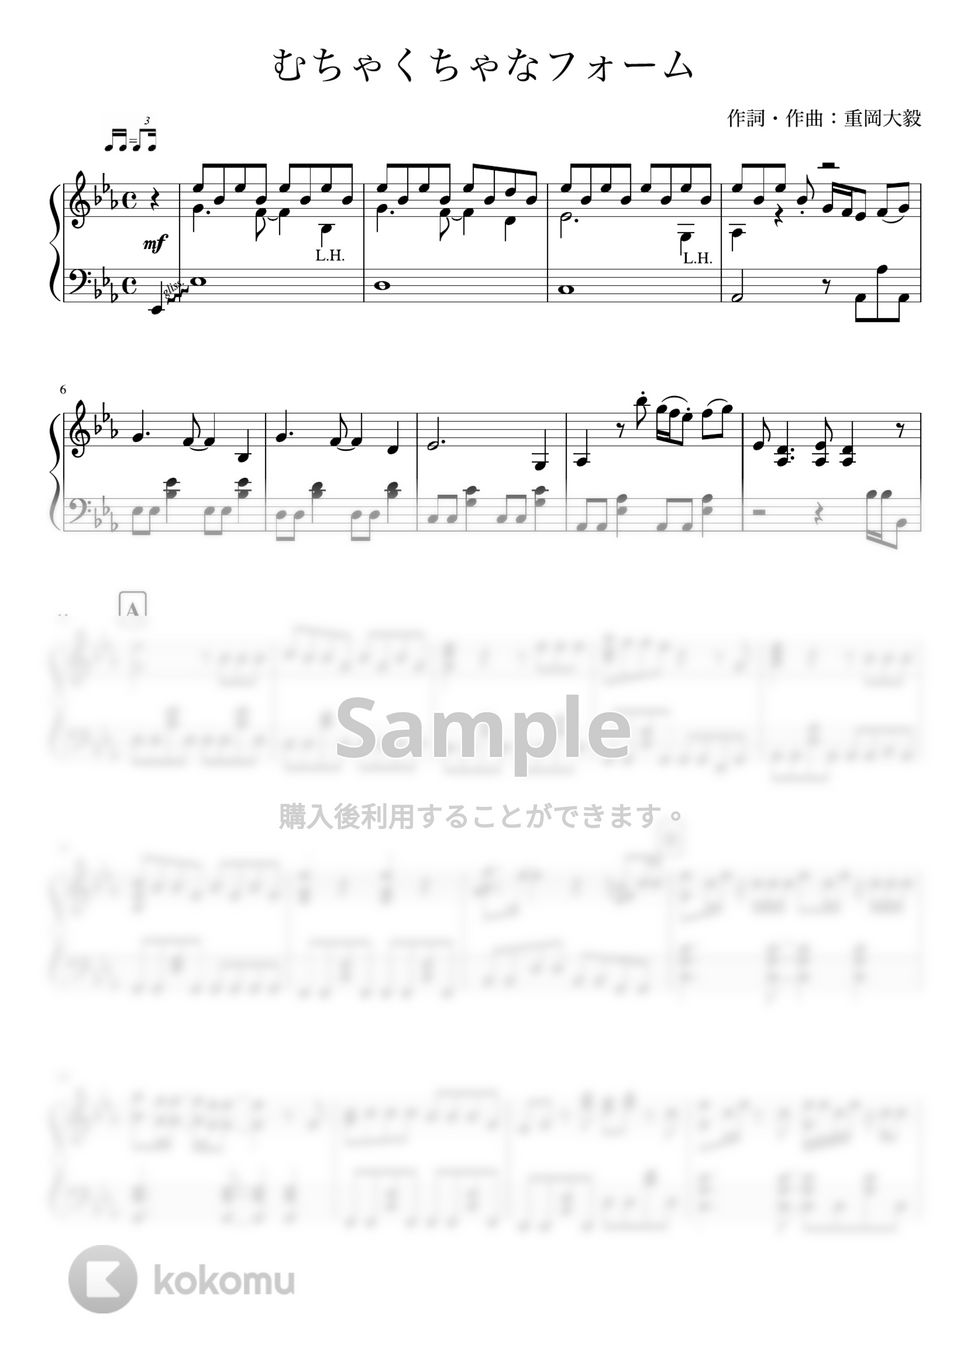 ジャニーズWEST - むちゃくちゃなフォーム (ピアノソロ) by あきのピアノ演奏